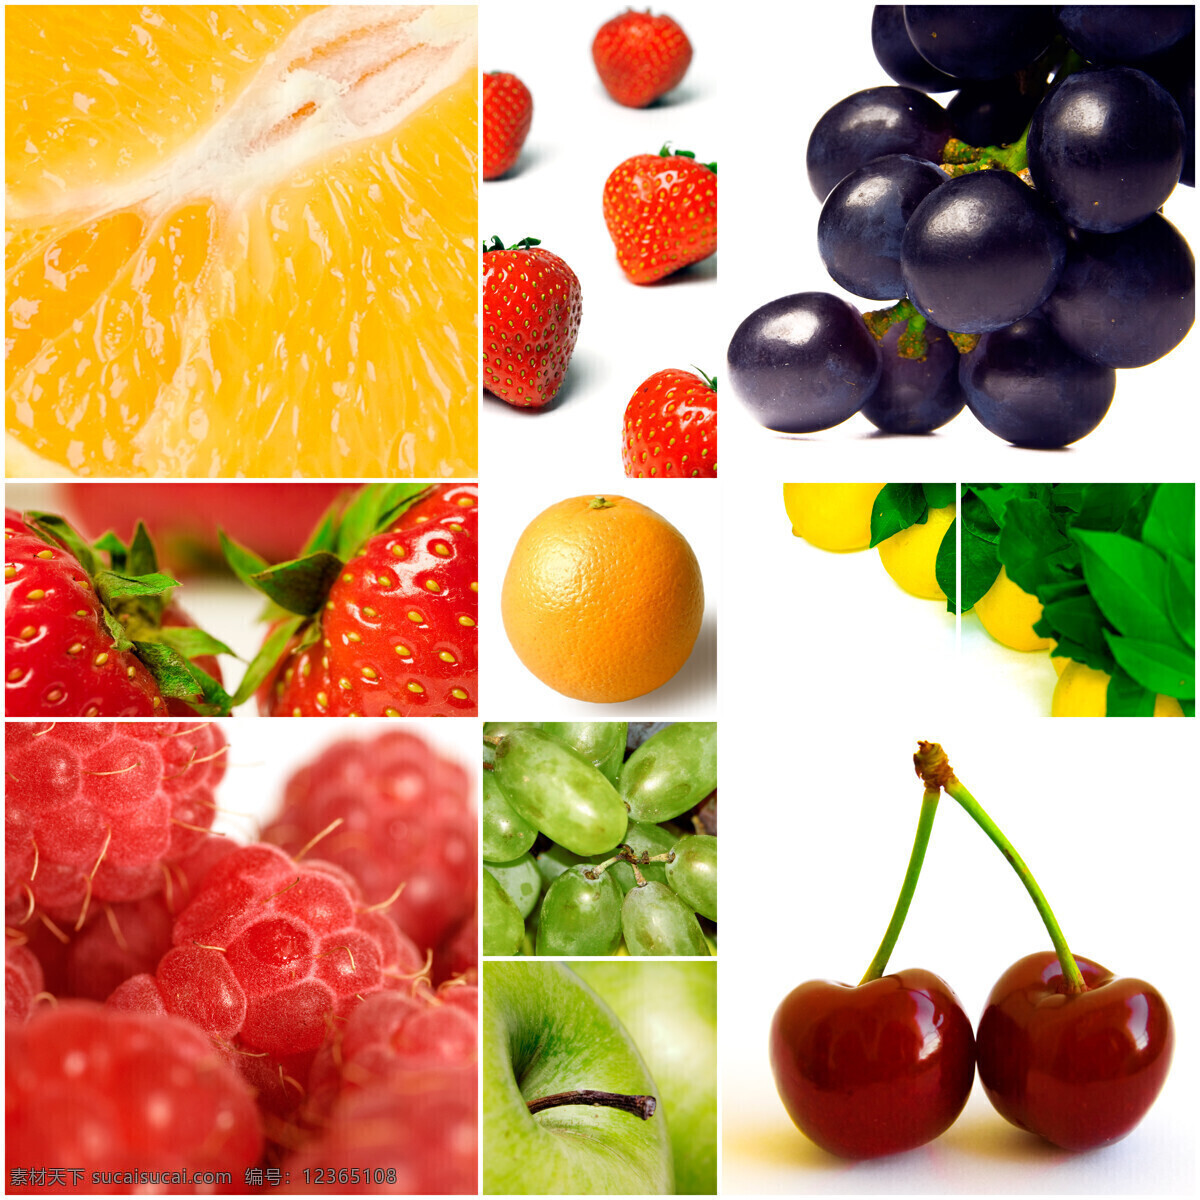 水果 拼图 食物 橙子 柚子 蓝莓 草莓 葡萄 苹果 樱桃 其他类别 生活百科